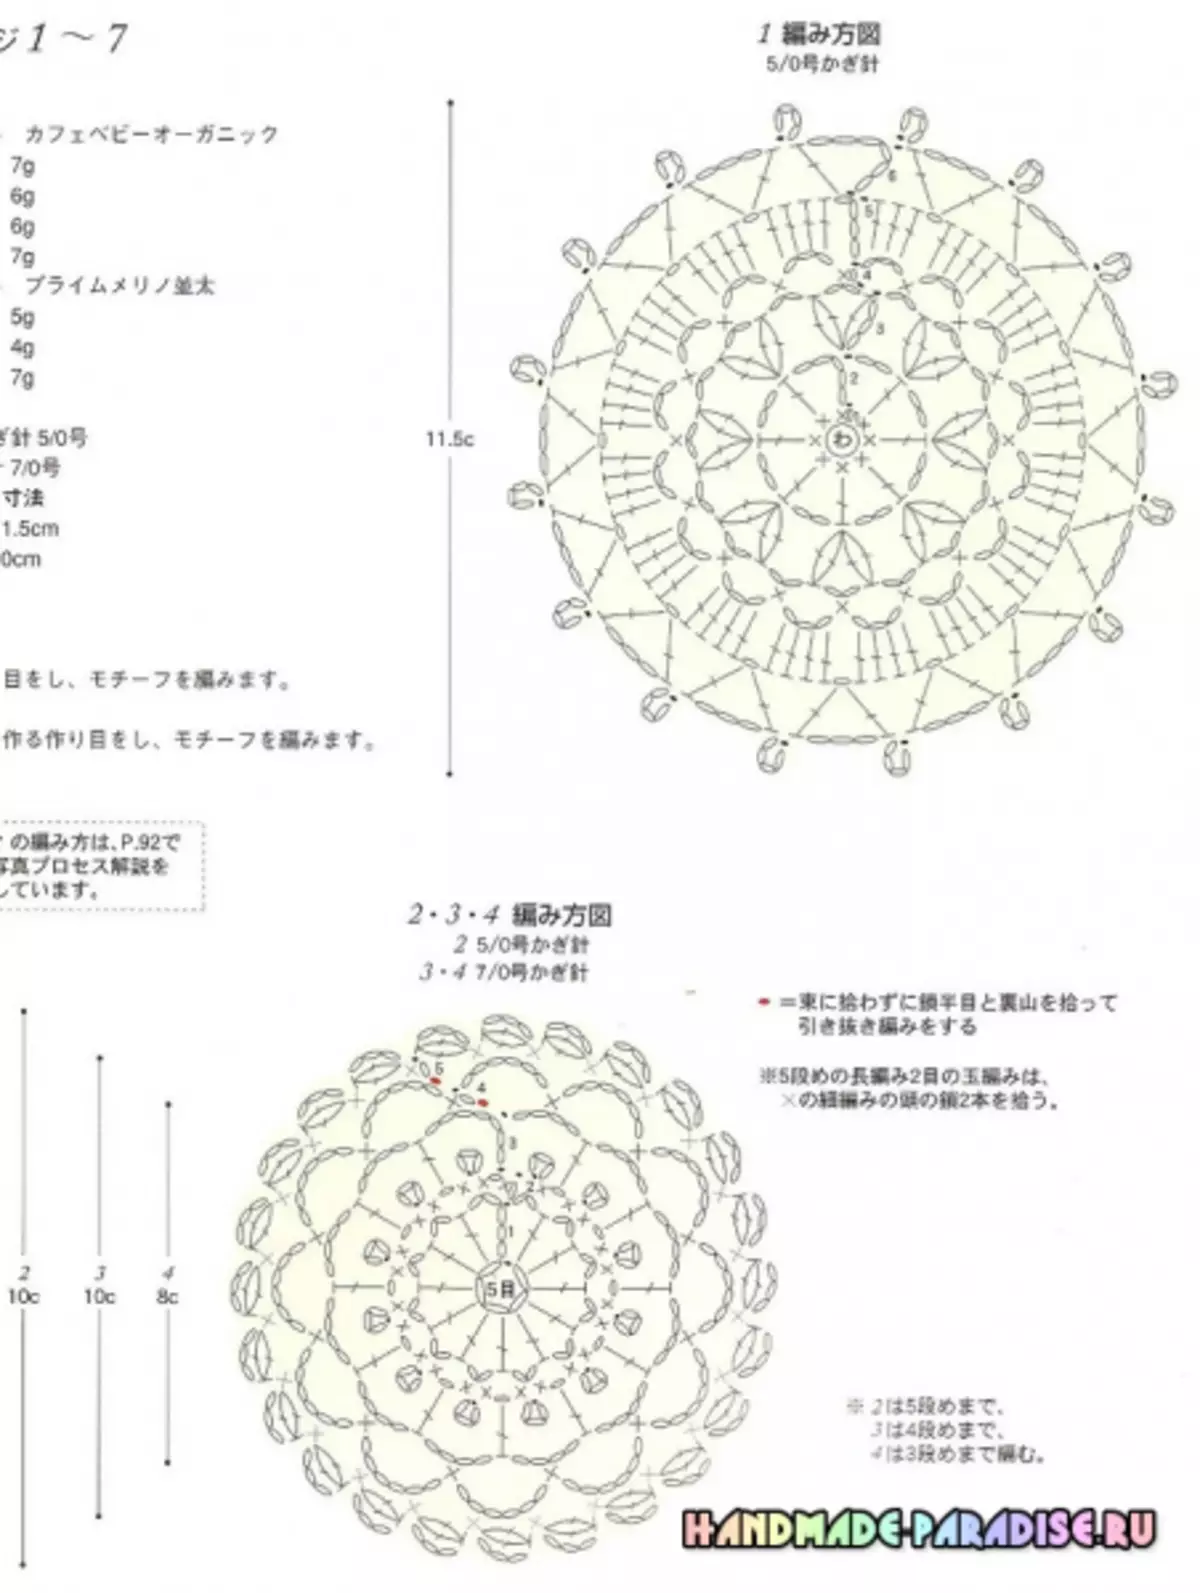 Japanesch Magazin mat Crochet Schemaen